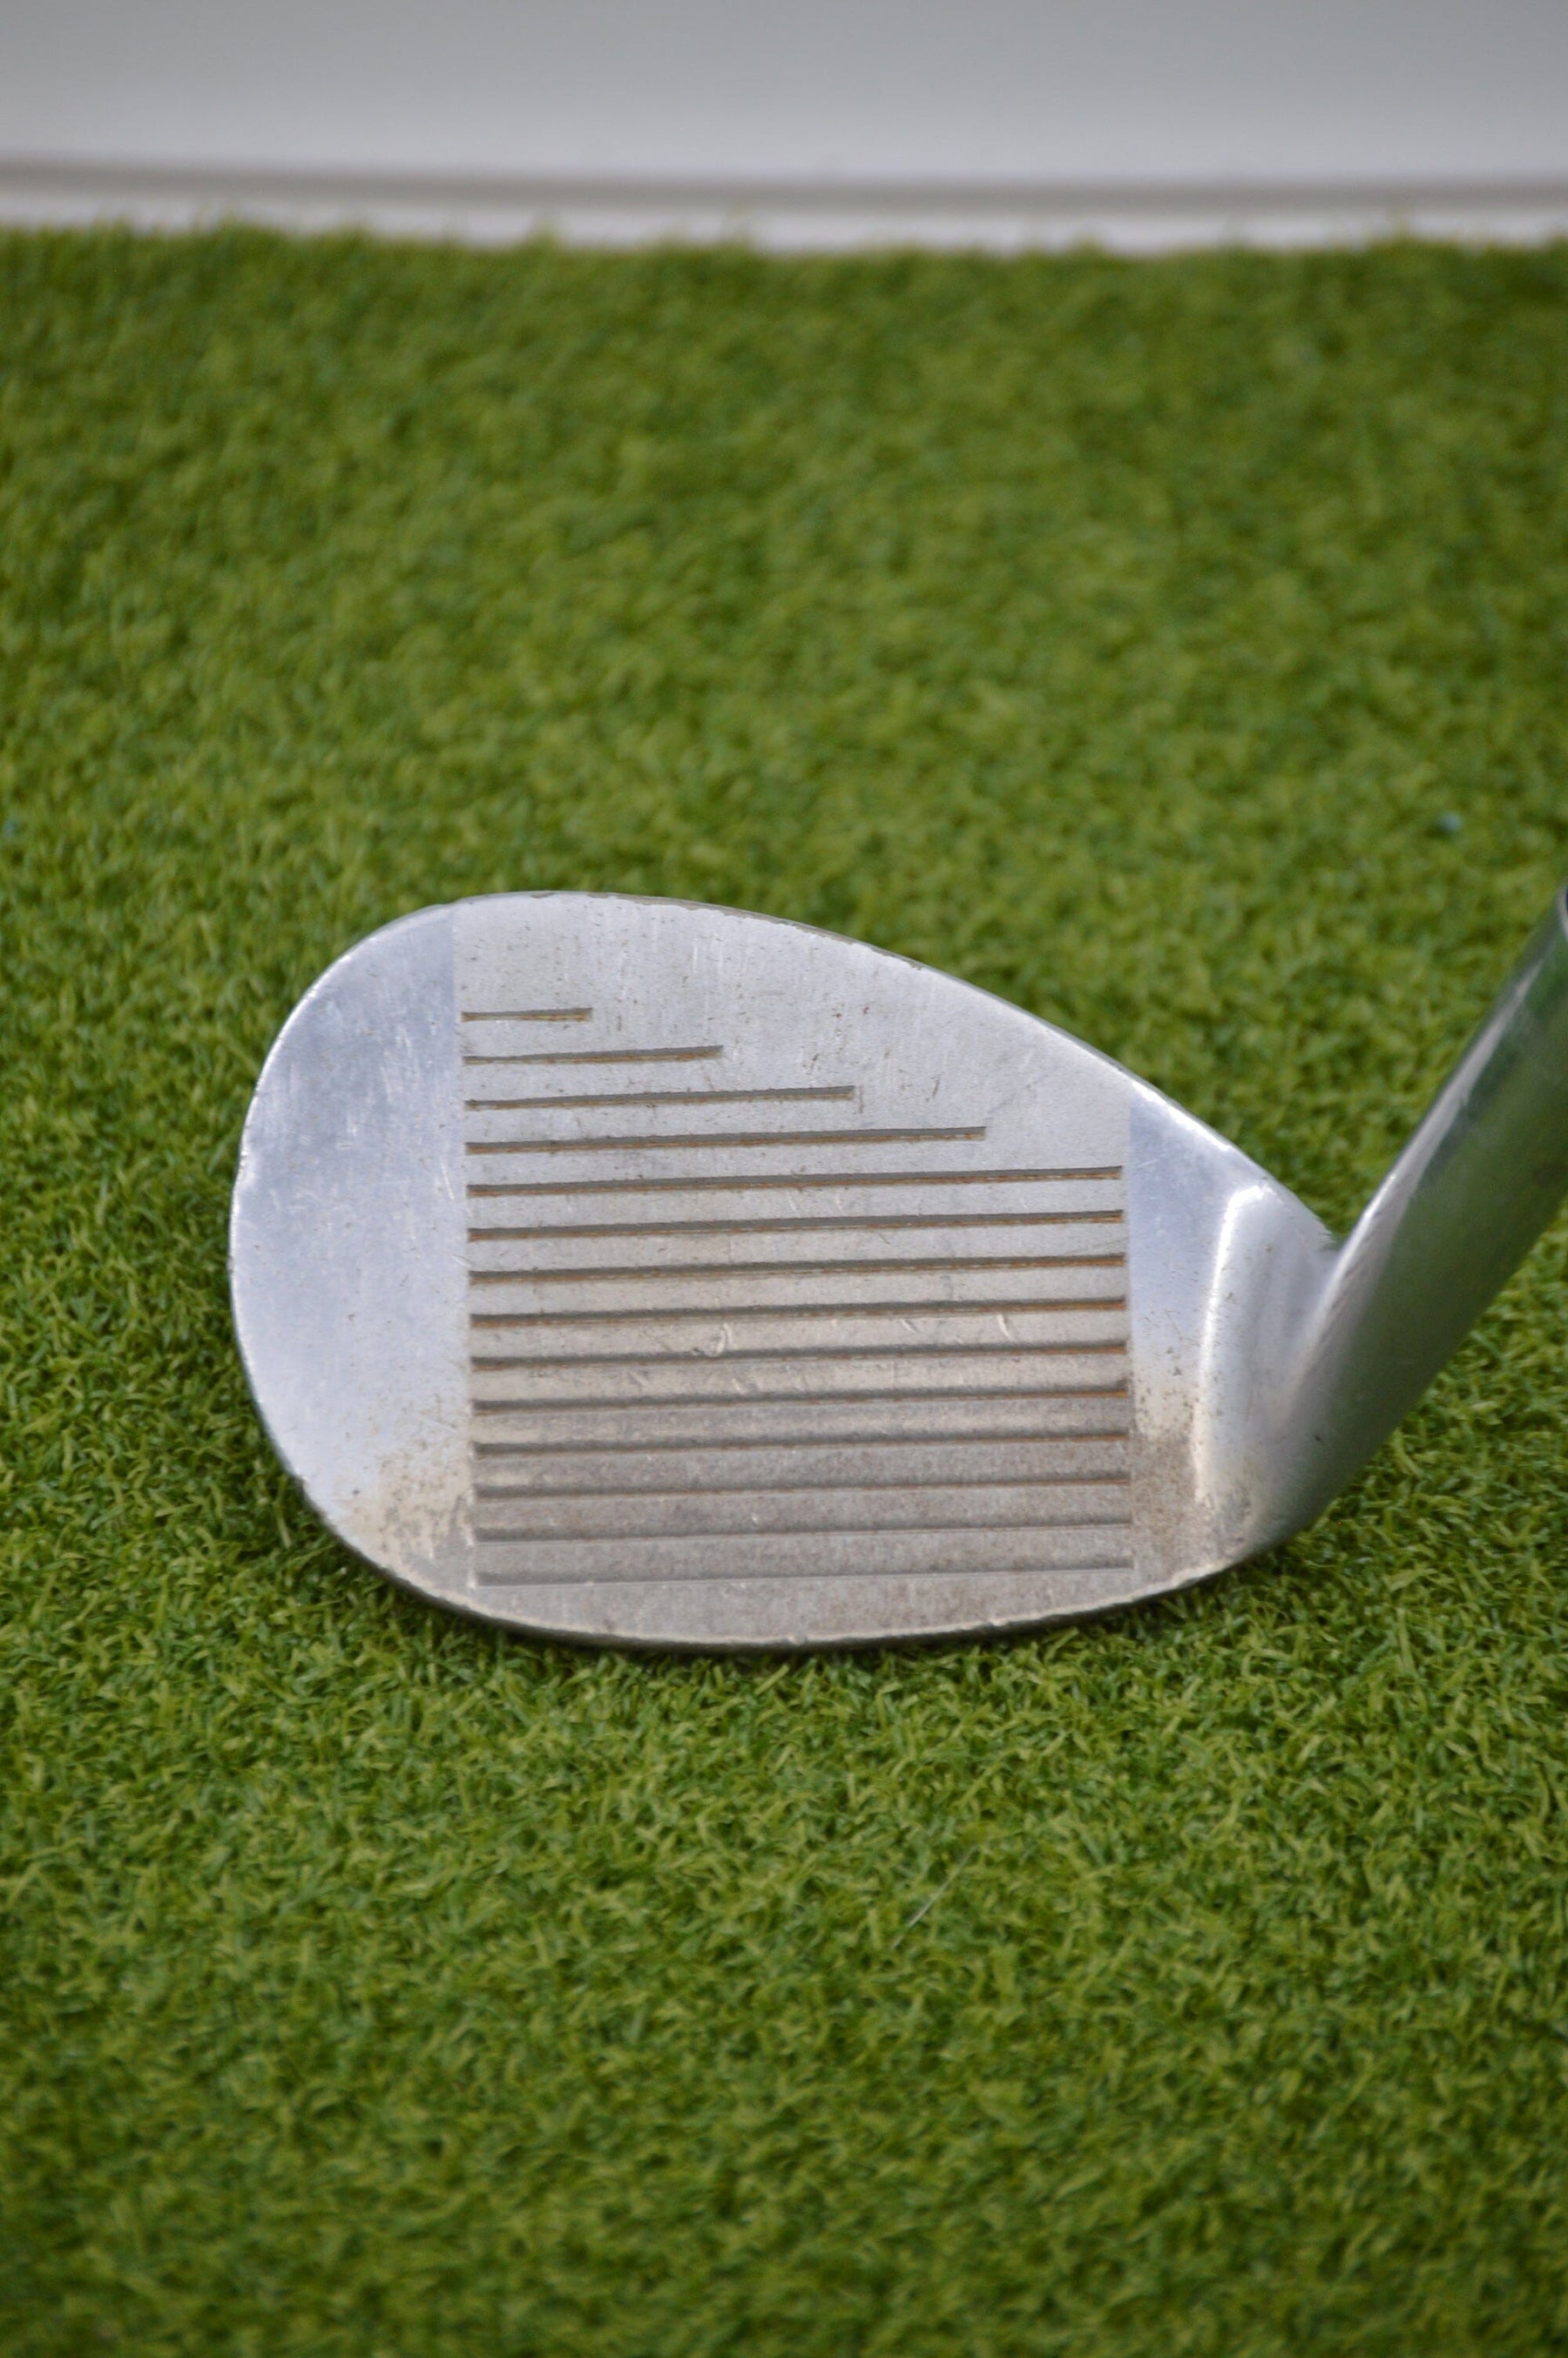 Ben Hogan Special Sand Wedge Golf Clubs GolfRoots 